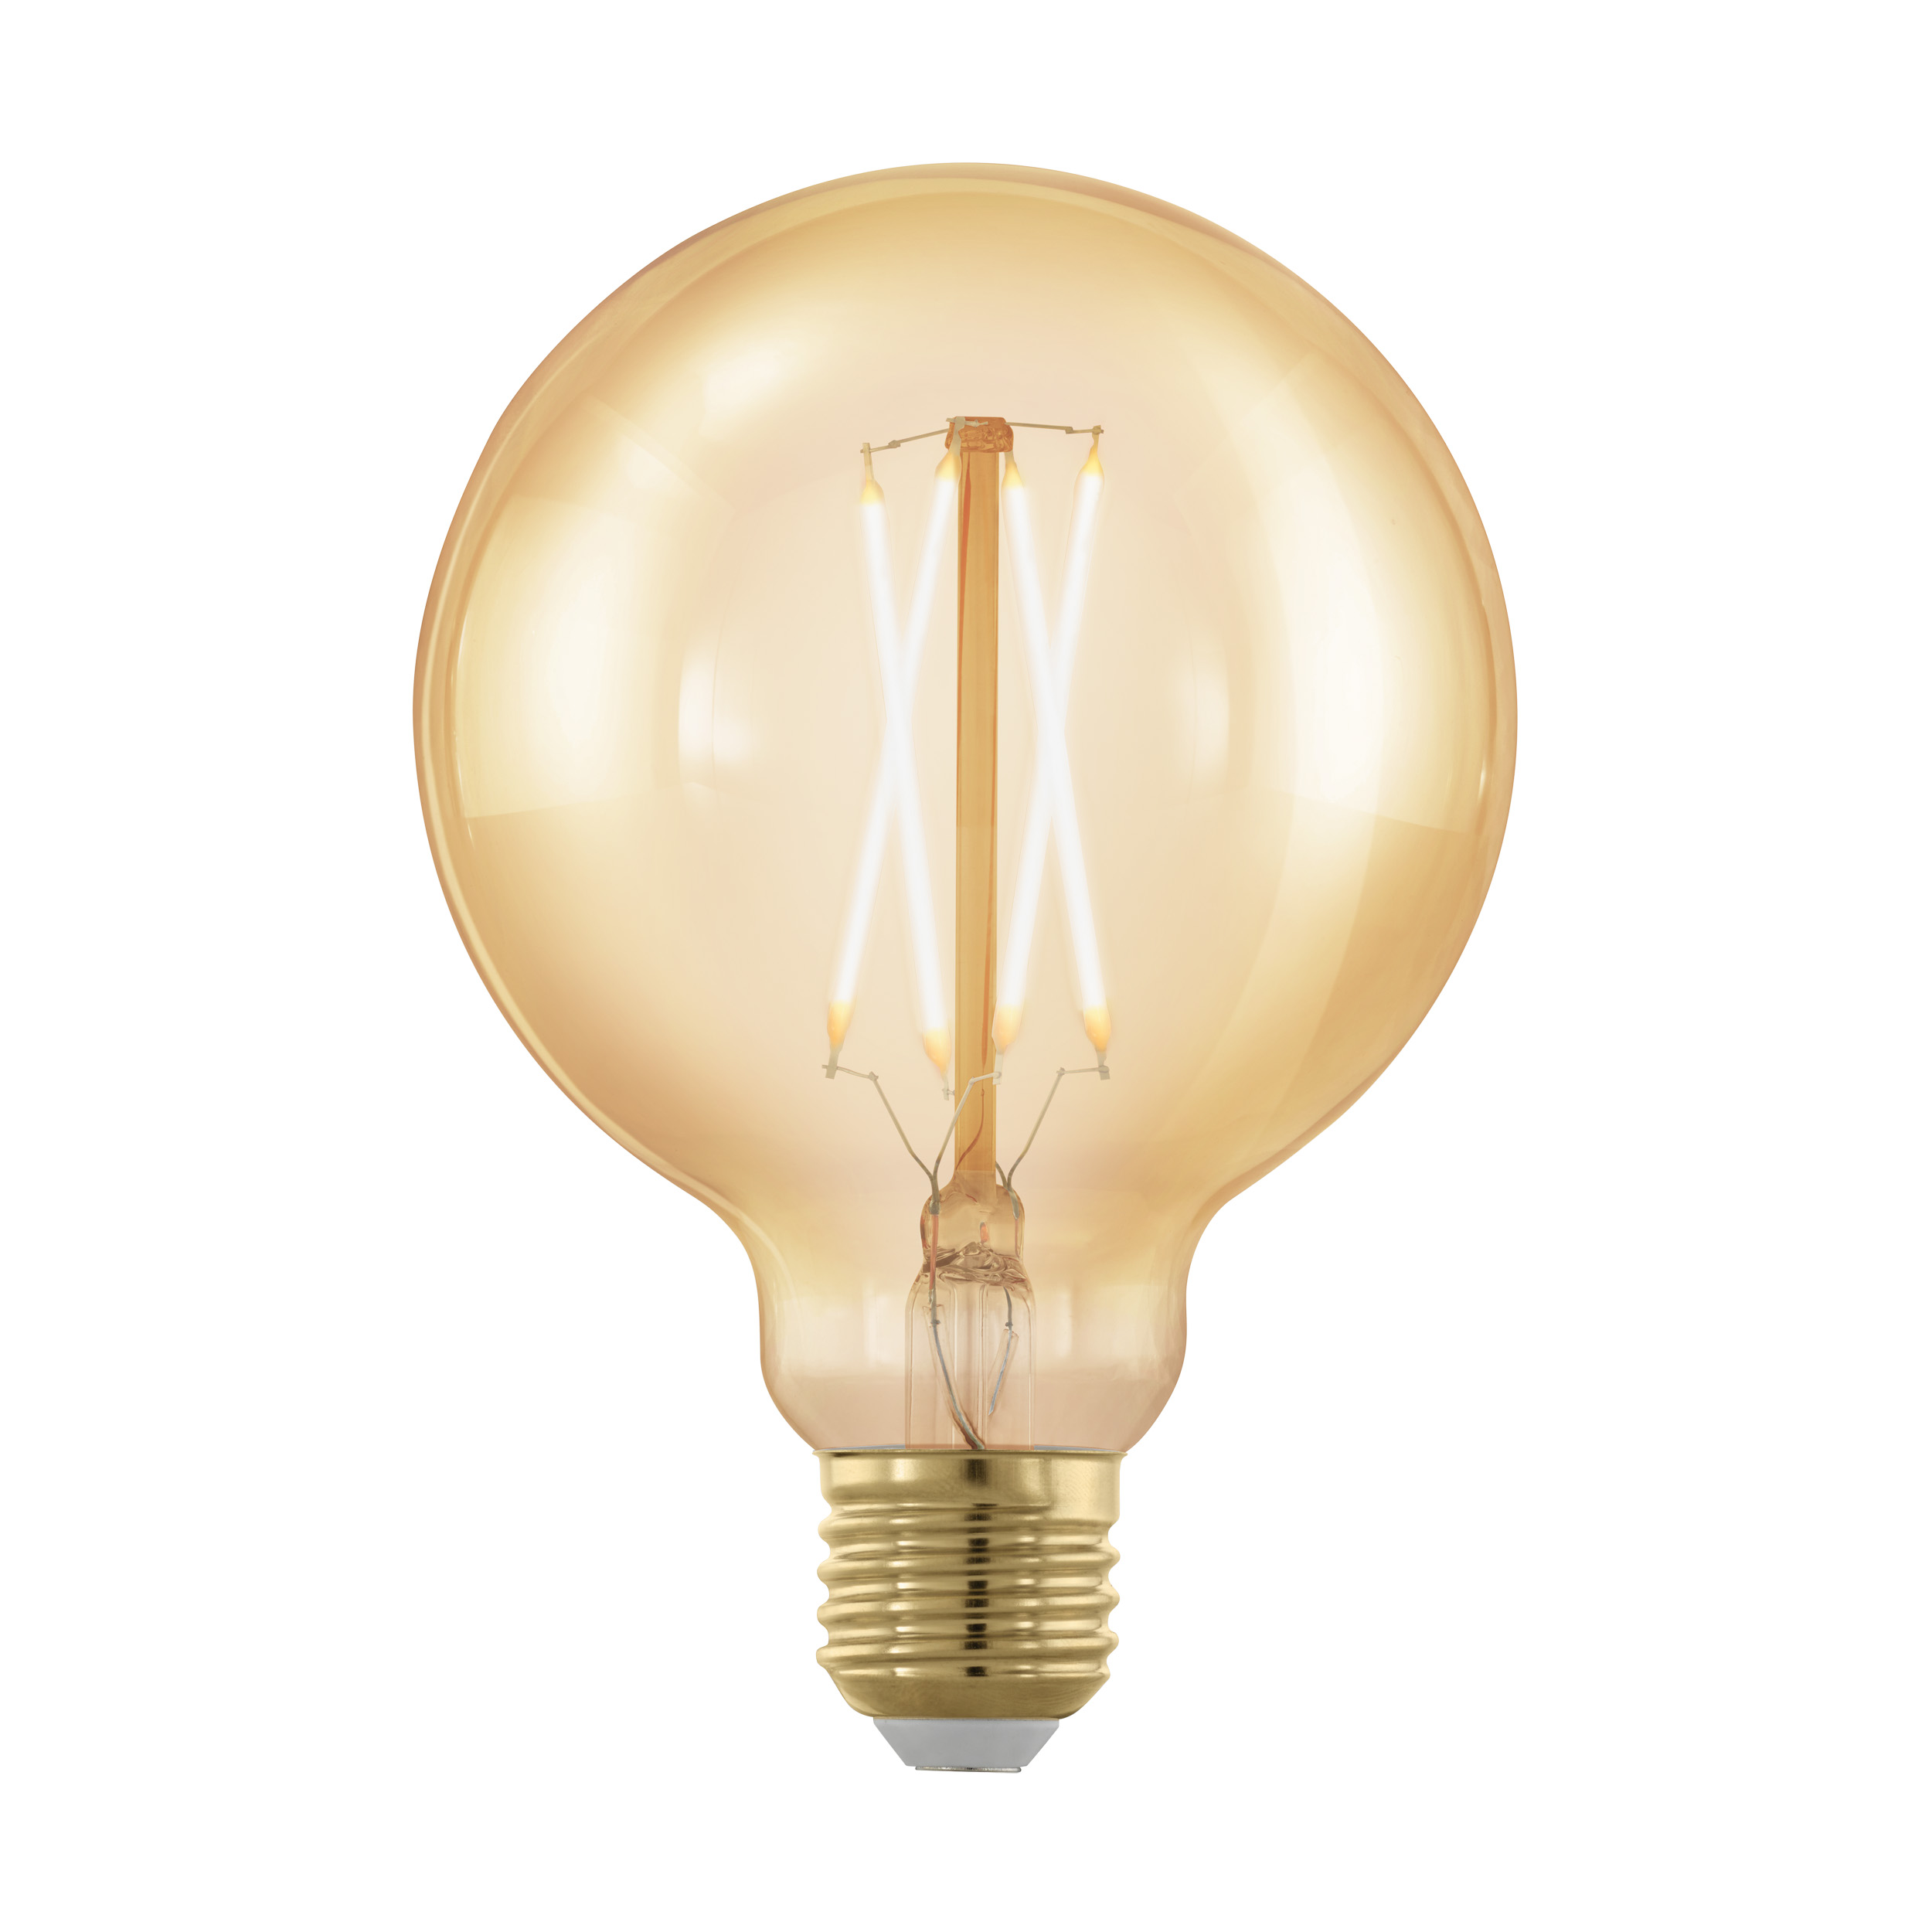 LED Lamp golden age E27 globe 95 320Lm 1700K dimb